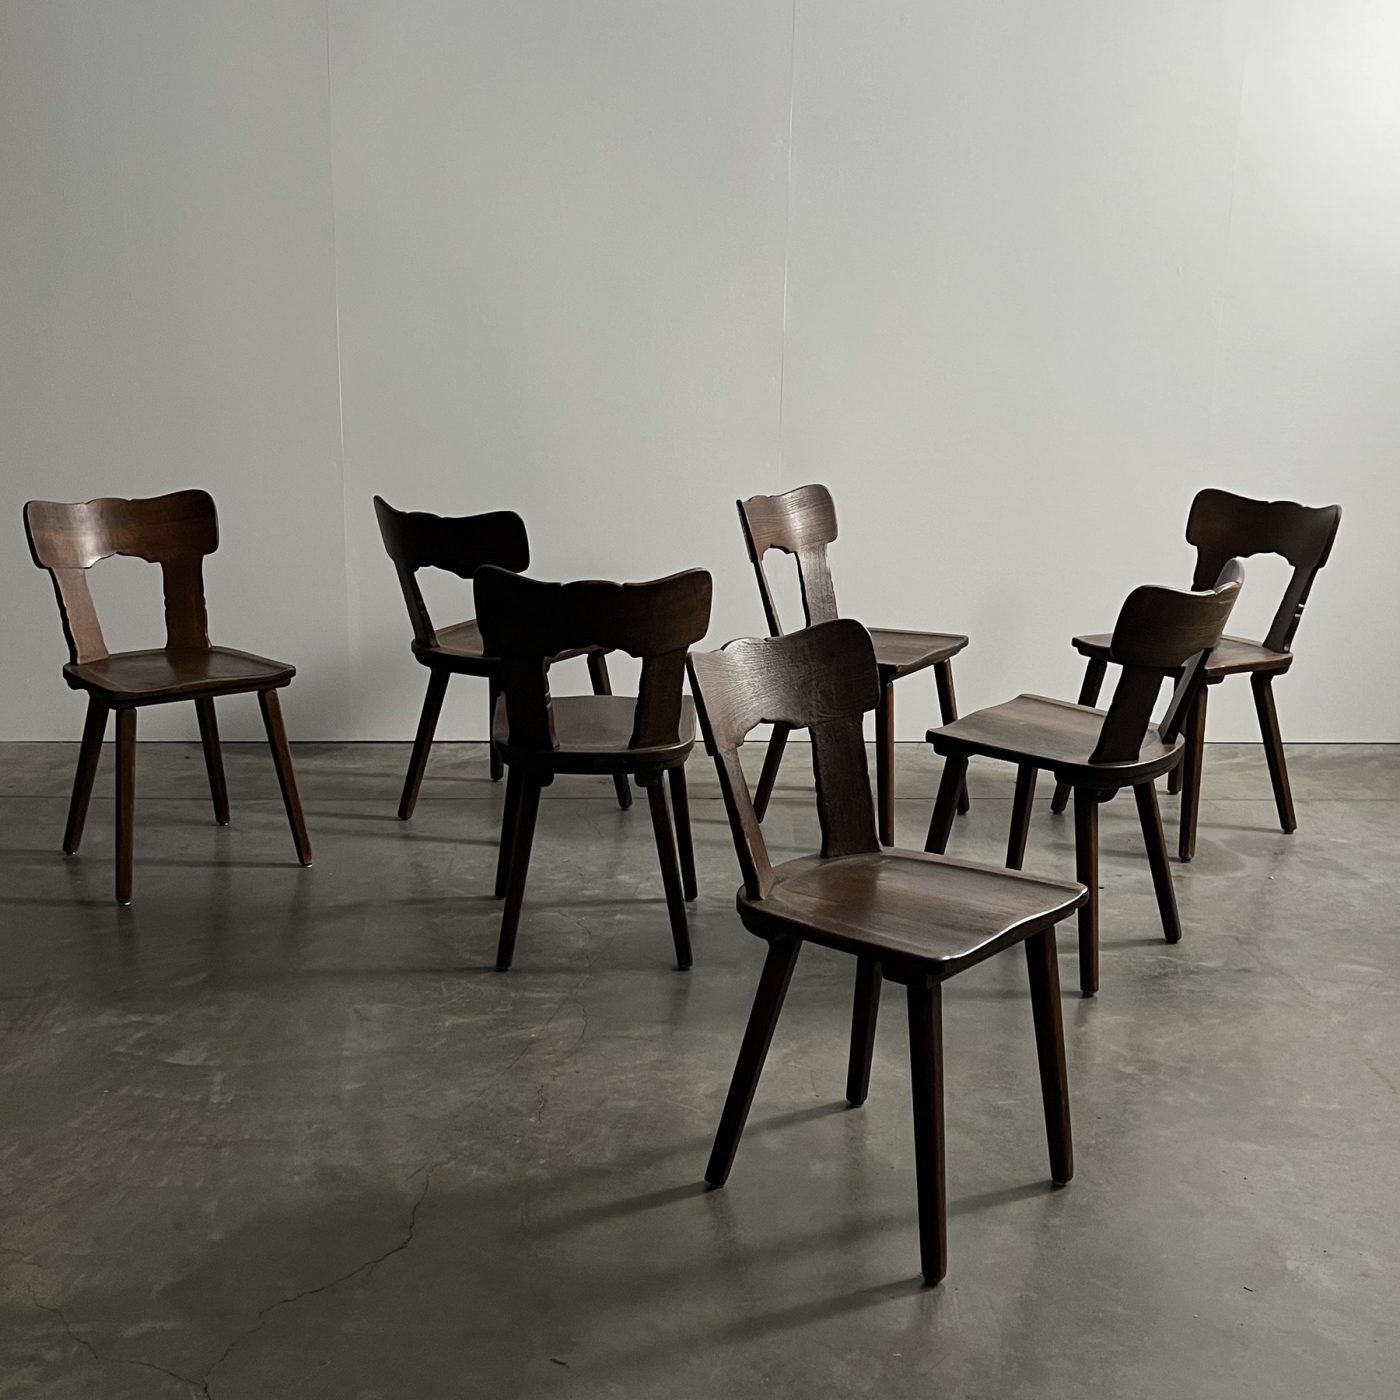 objet-vagabond-bistrot-chairs0005